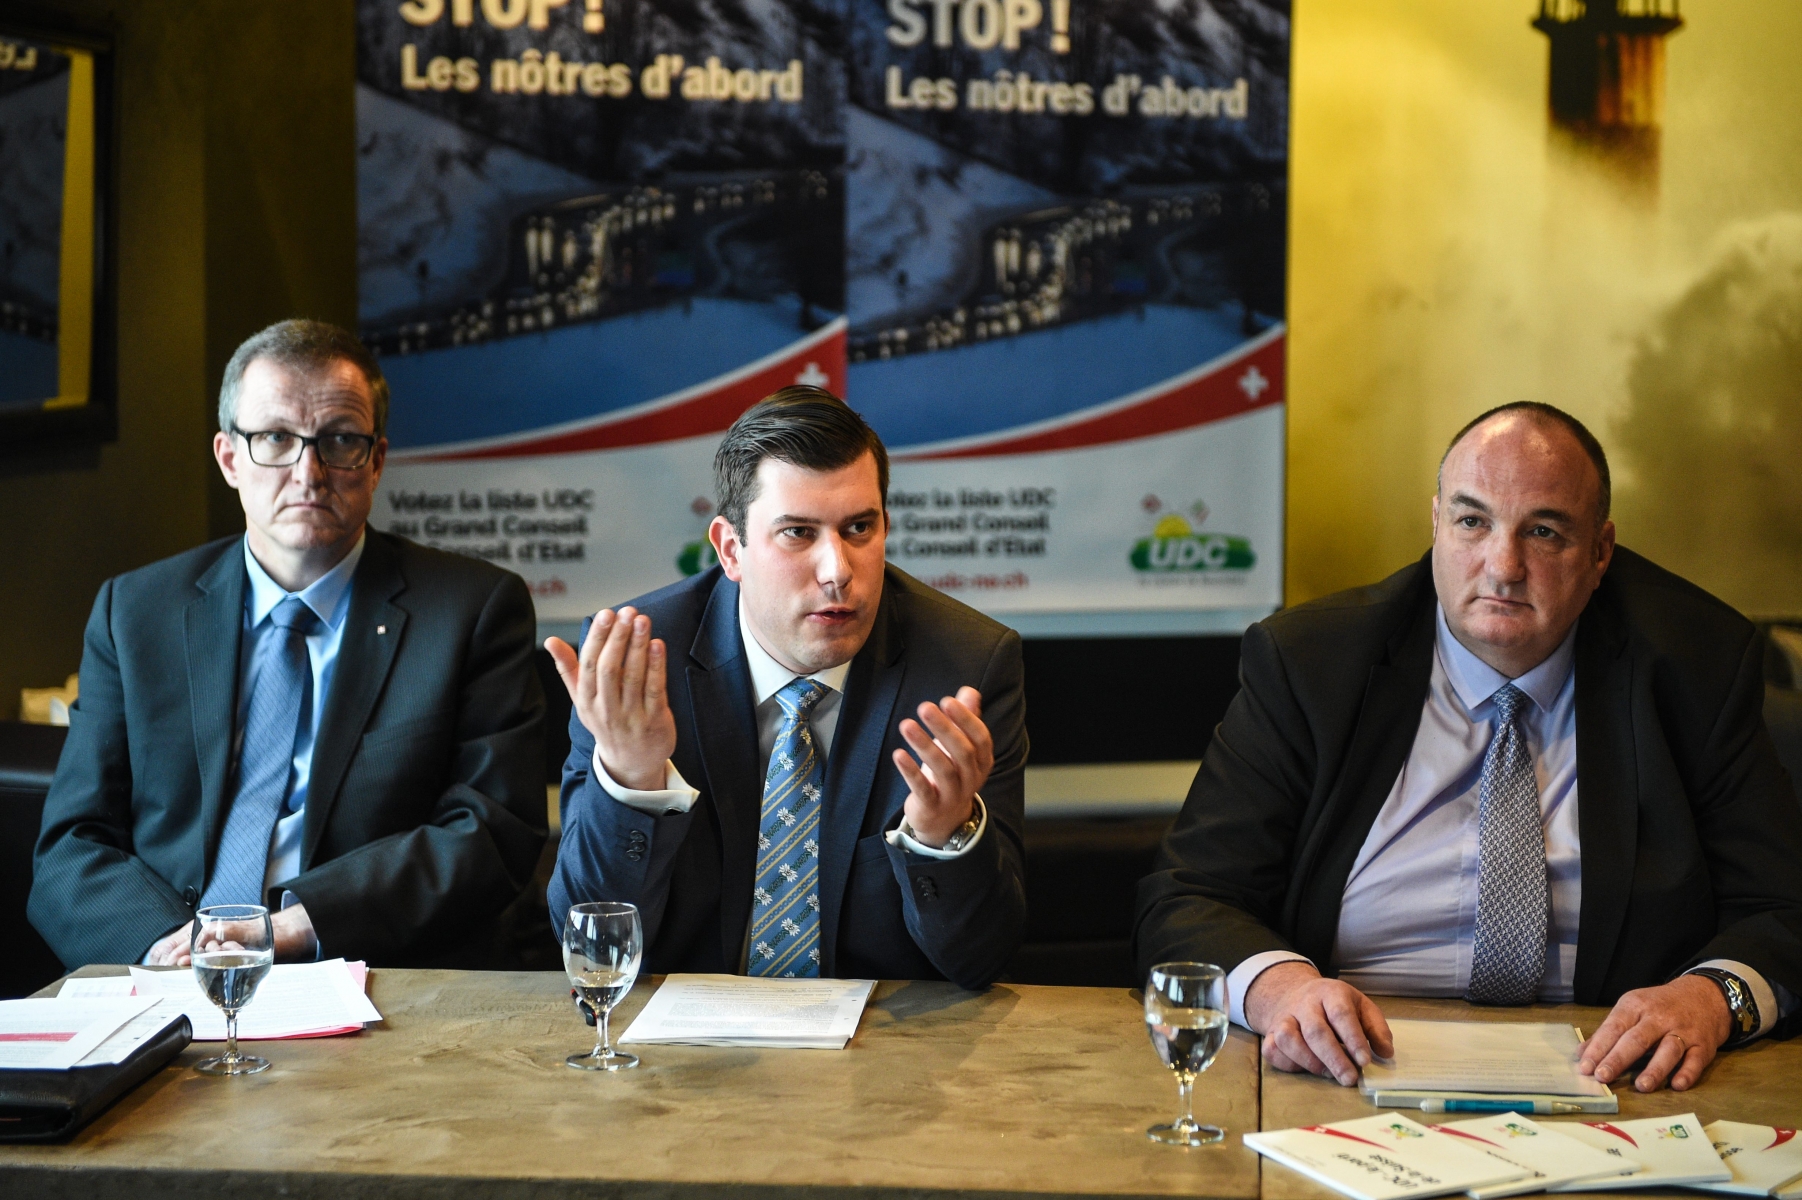 Les trois candidats de l’UDC à la course au Conseil d’Etat: Stephan Moser, Xavier Challandes et Jean-Charles Legrix.